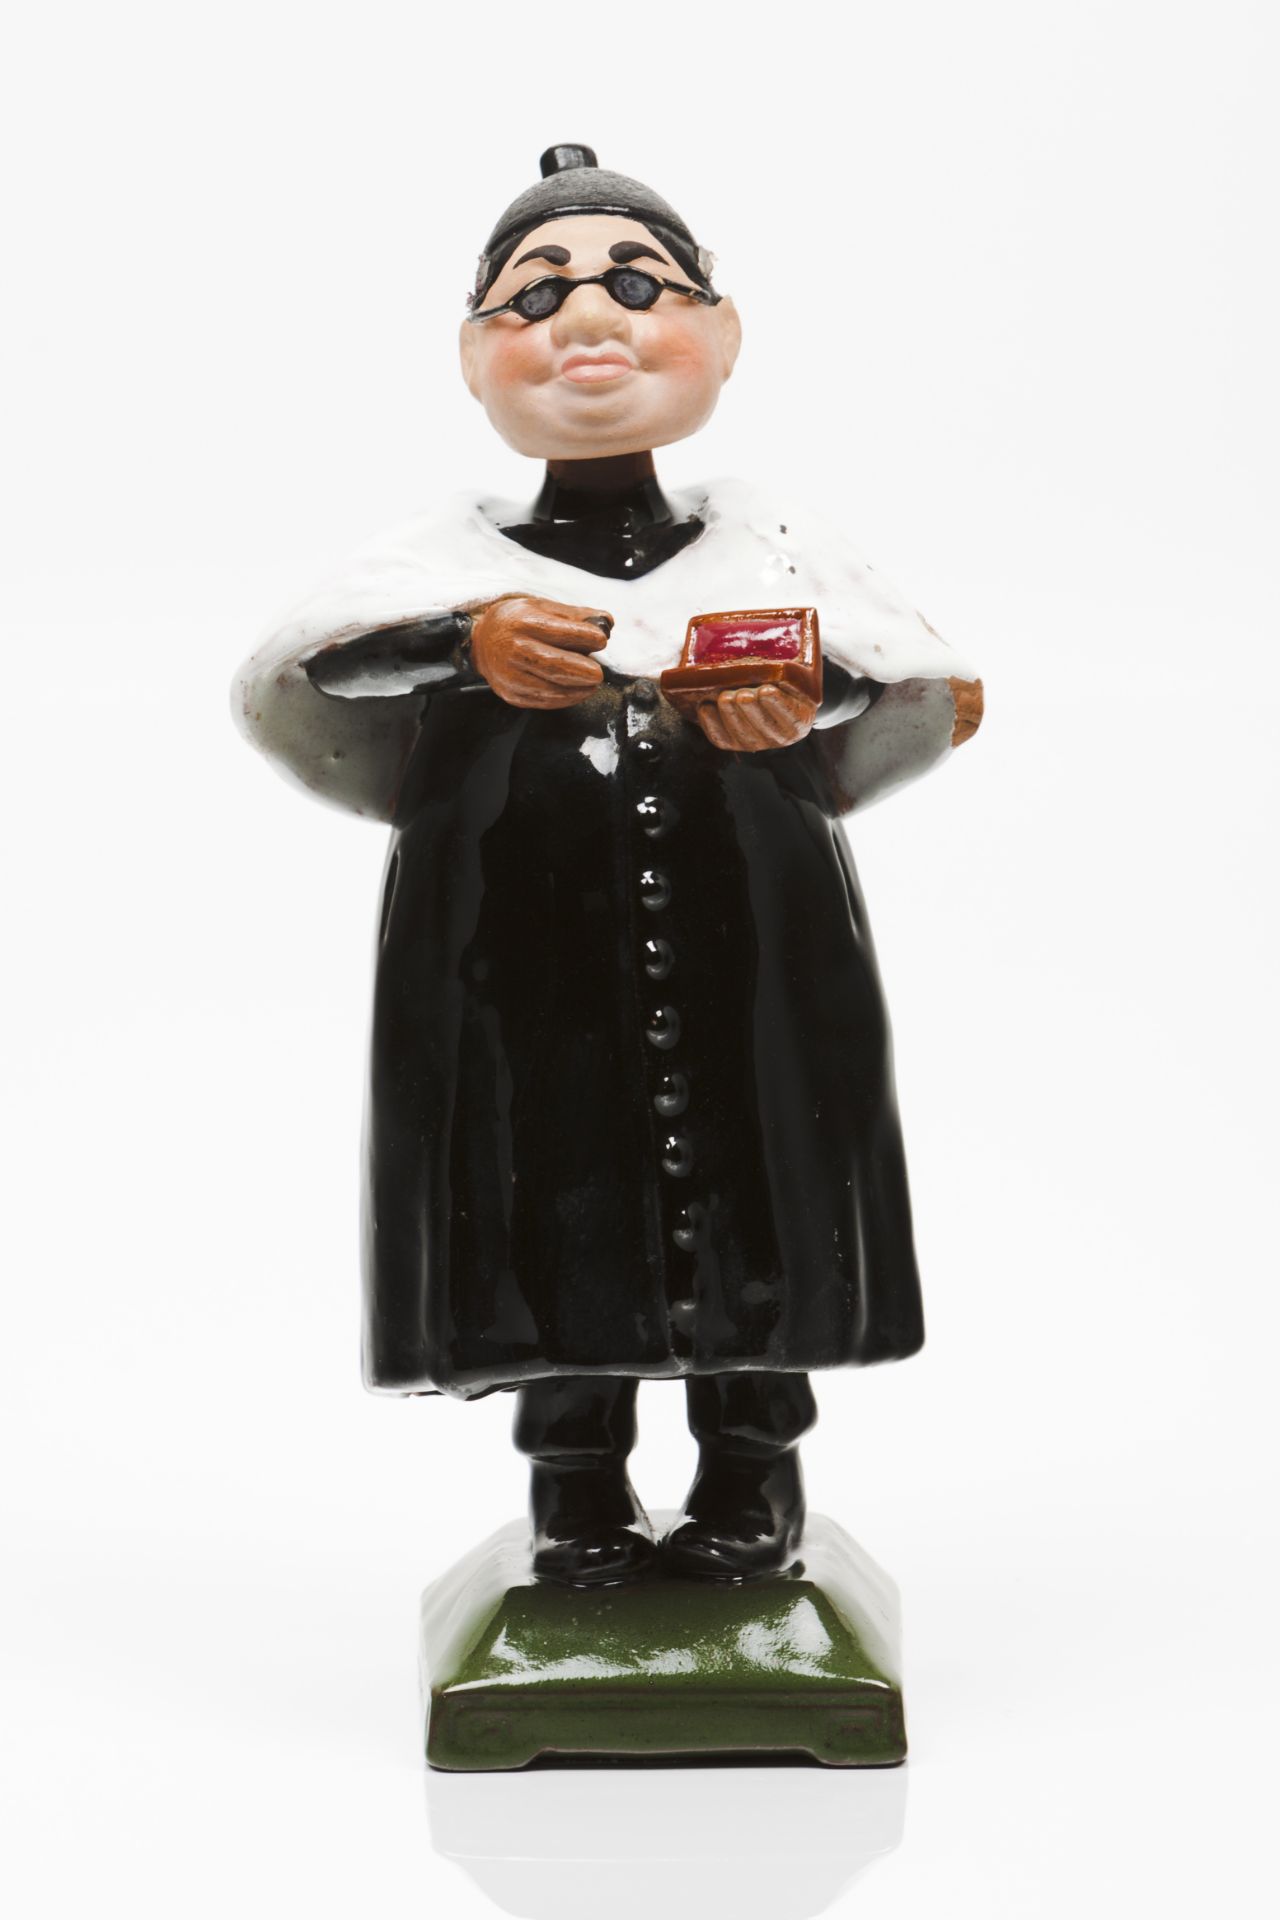 A vicar